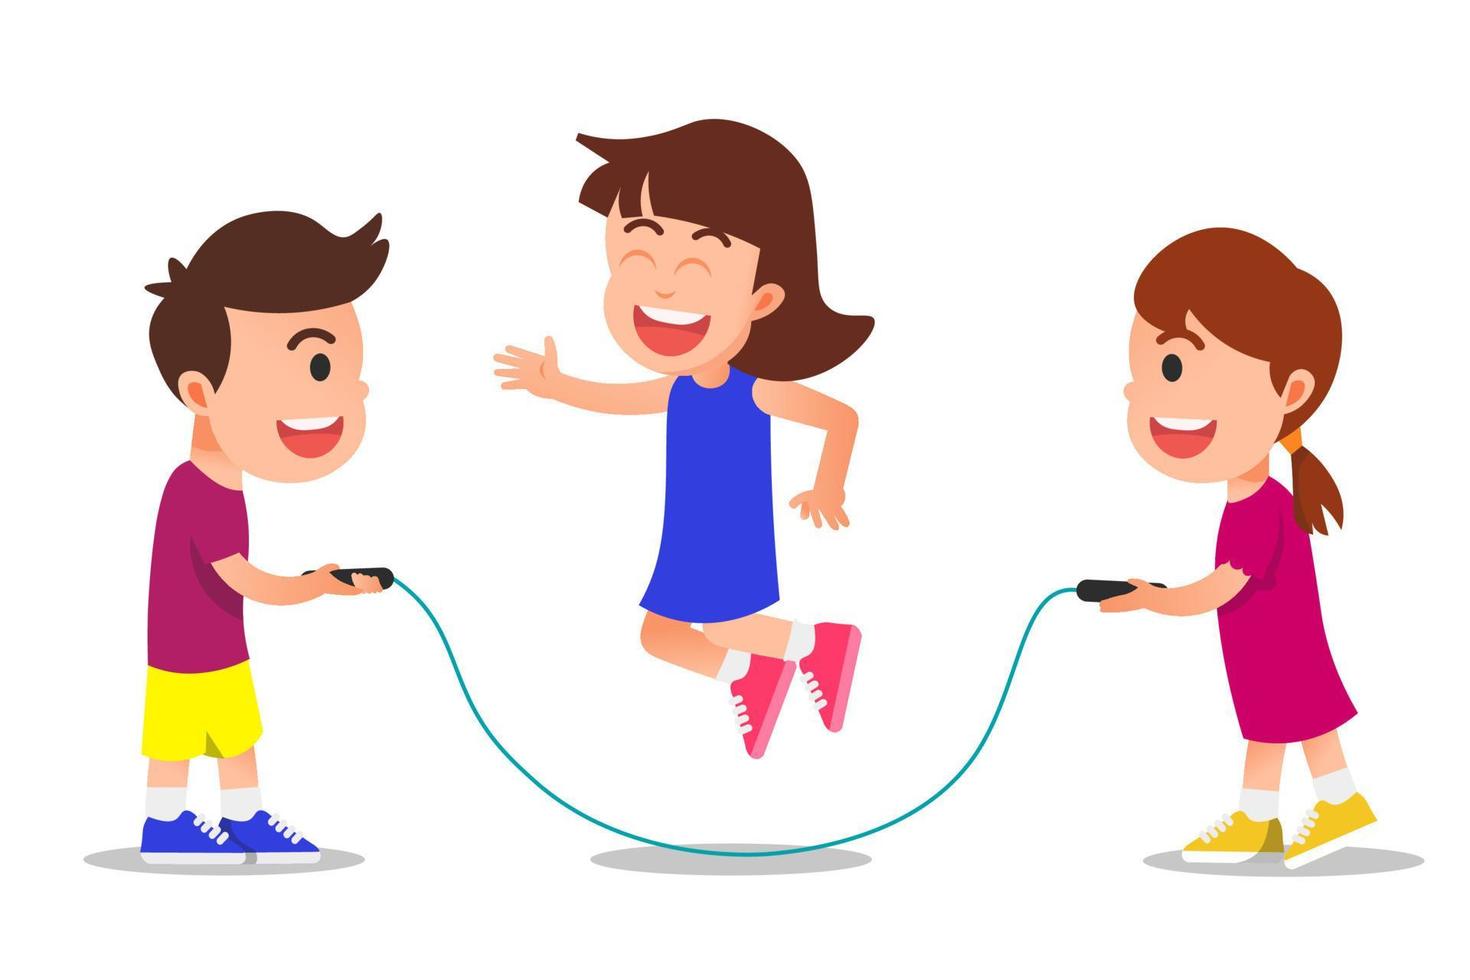 illustration von glücklichen kindern, die springseil spielen vektor